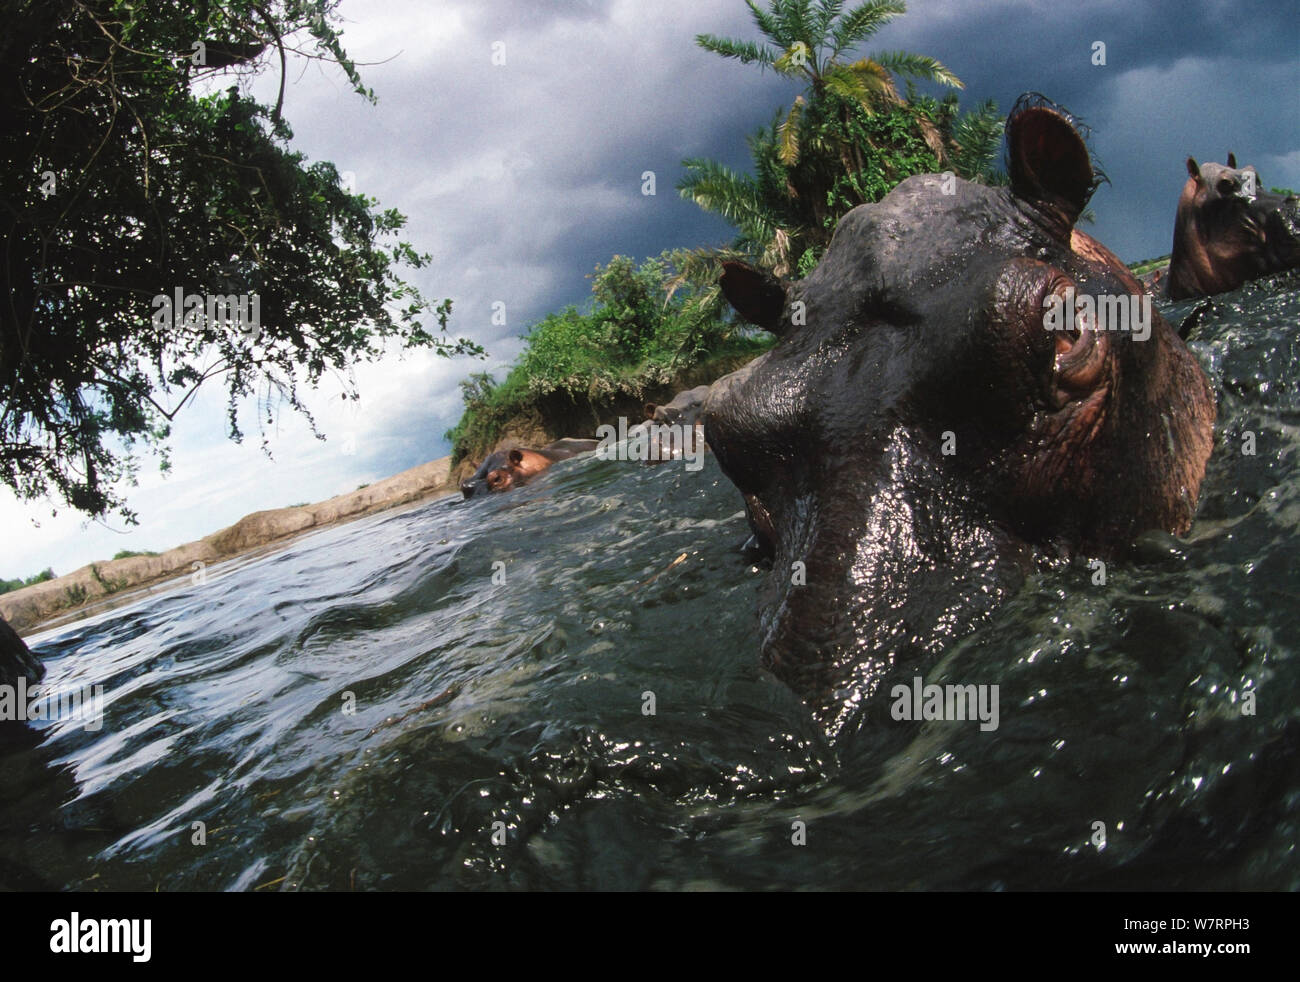 Hipopótamo (Hippopotamus amphibius) en Rutshuru río con proximidad de tormentas, tomada antes de que el sacrificio masivo de hipopótamos en la región al inicio del deterioro de la estabilidad durante el derrocamiento del Presidente Mobutu Sese Seko a mediados de la década de 1990. Noreste de Zaire, ahora República Democrática del Congo. Foto de stock